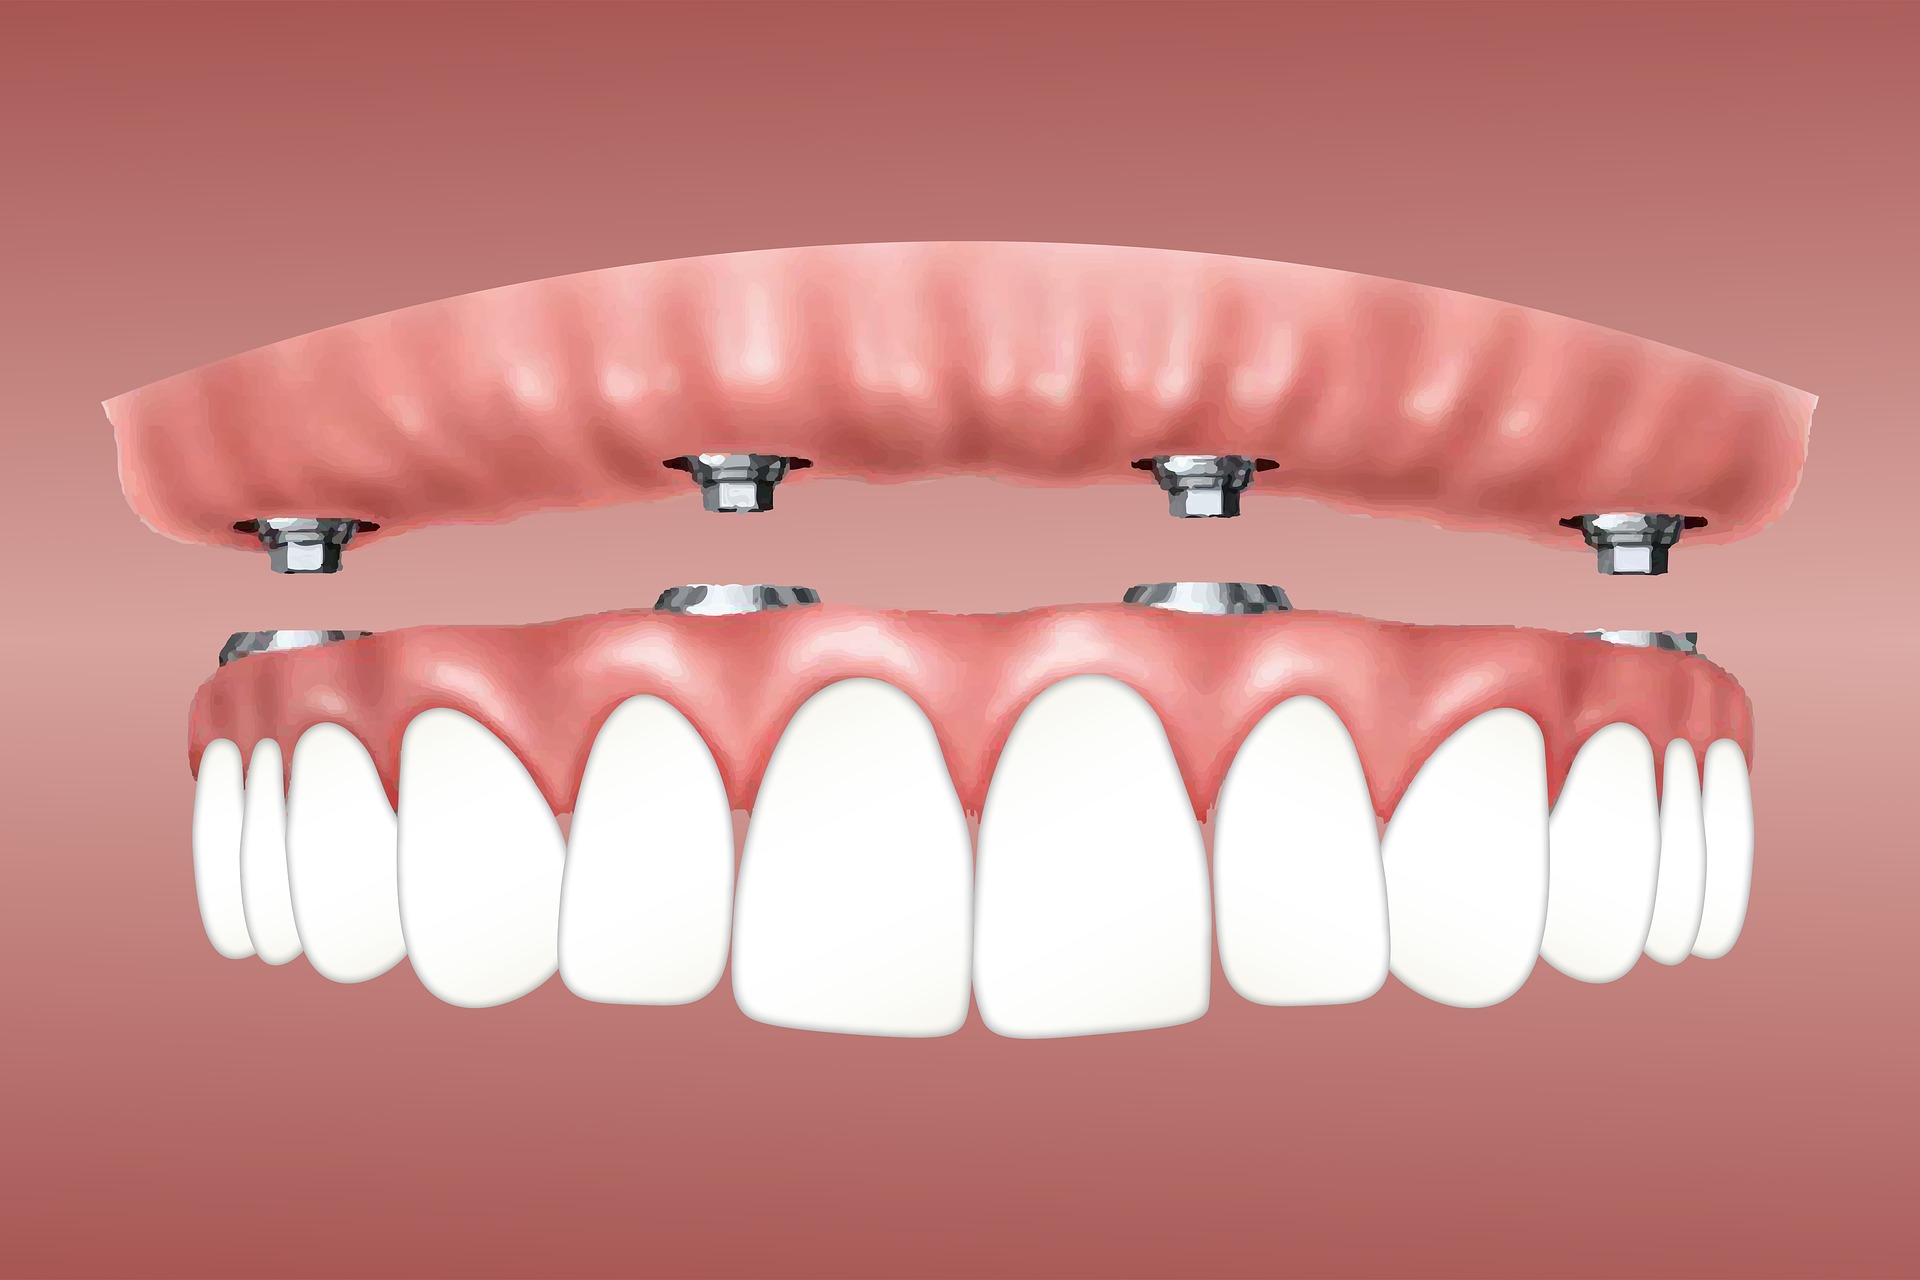 Dental Blush implants Benefits of Dental Implants with Miami Top Dentists Implants  dental implants near me Dental Implants Miami FL dental implants dental implant cost dental clinic Benefits of Dental Implants 